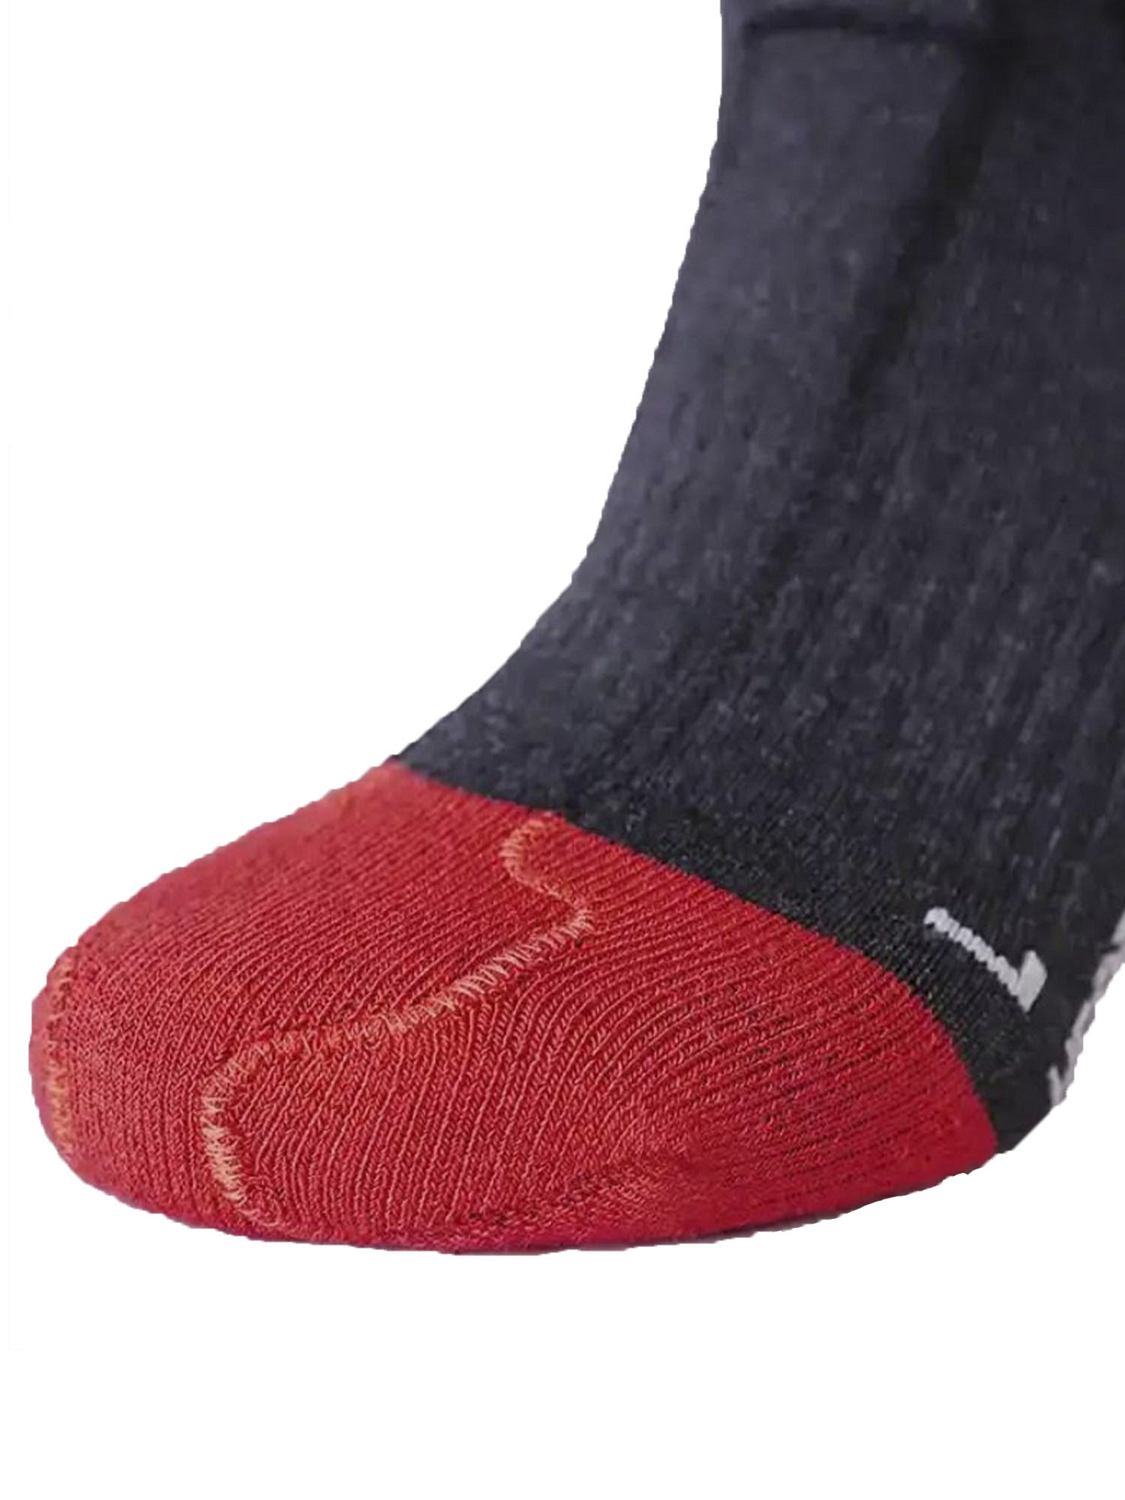 Носки с обогревательным элементом LENZ Heat Sock 5.1 Toe Cap Regular Fit Anthracite/Red